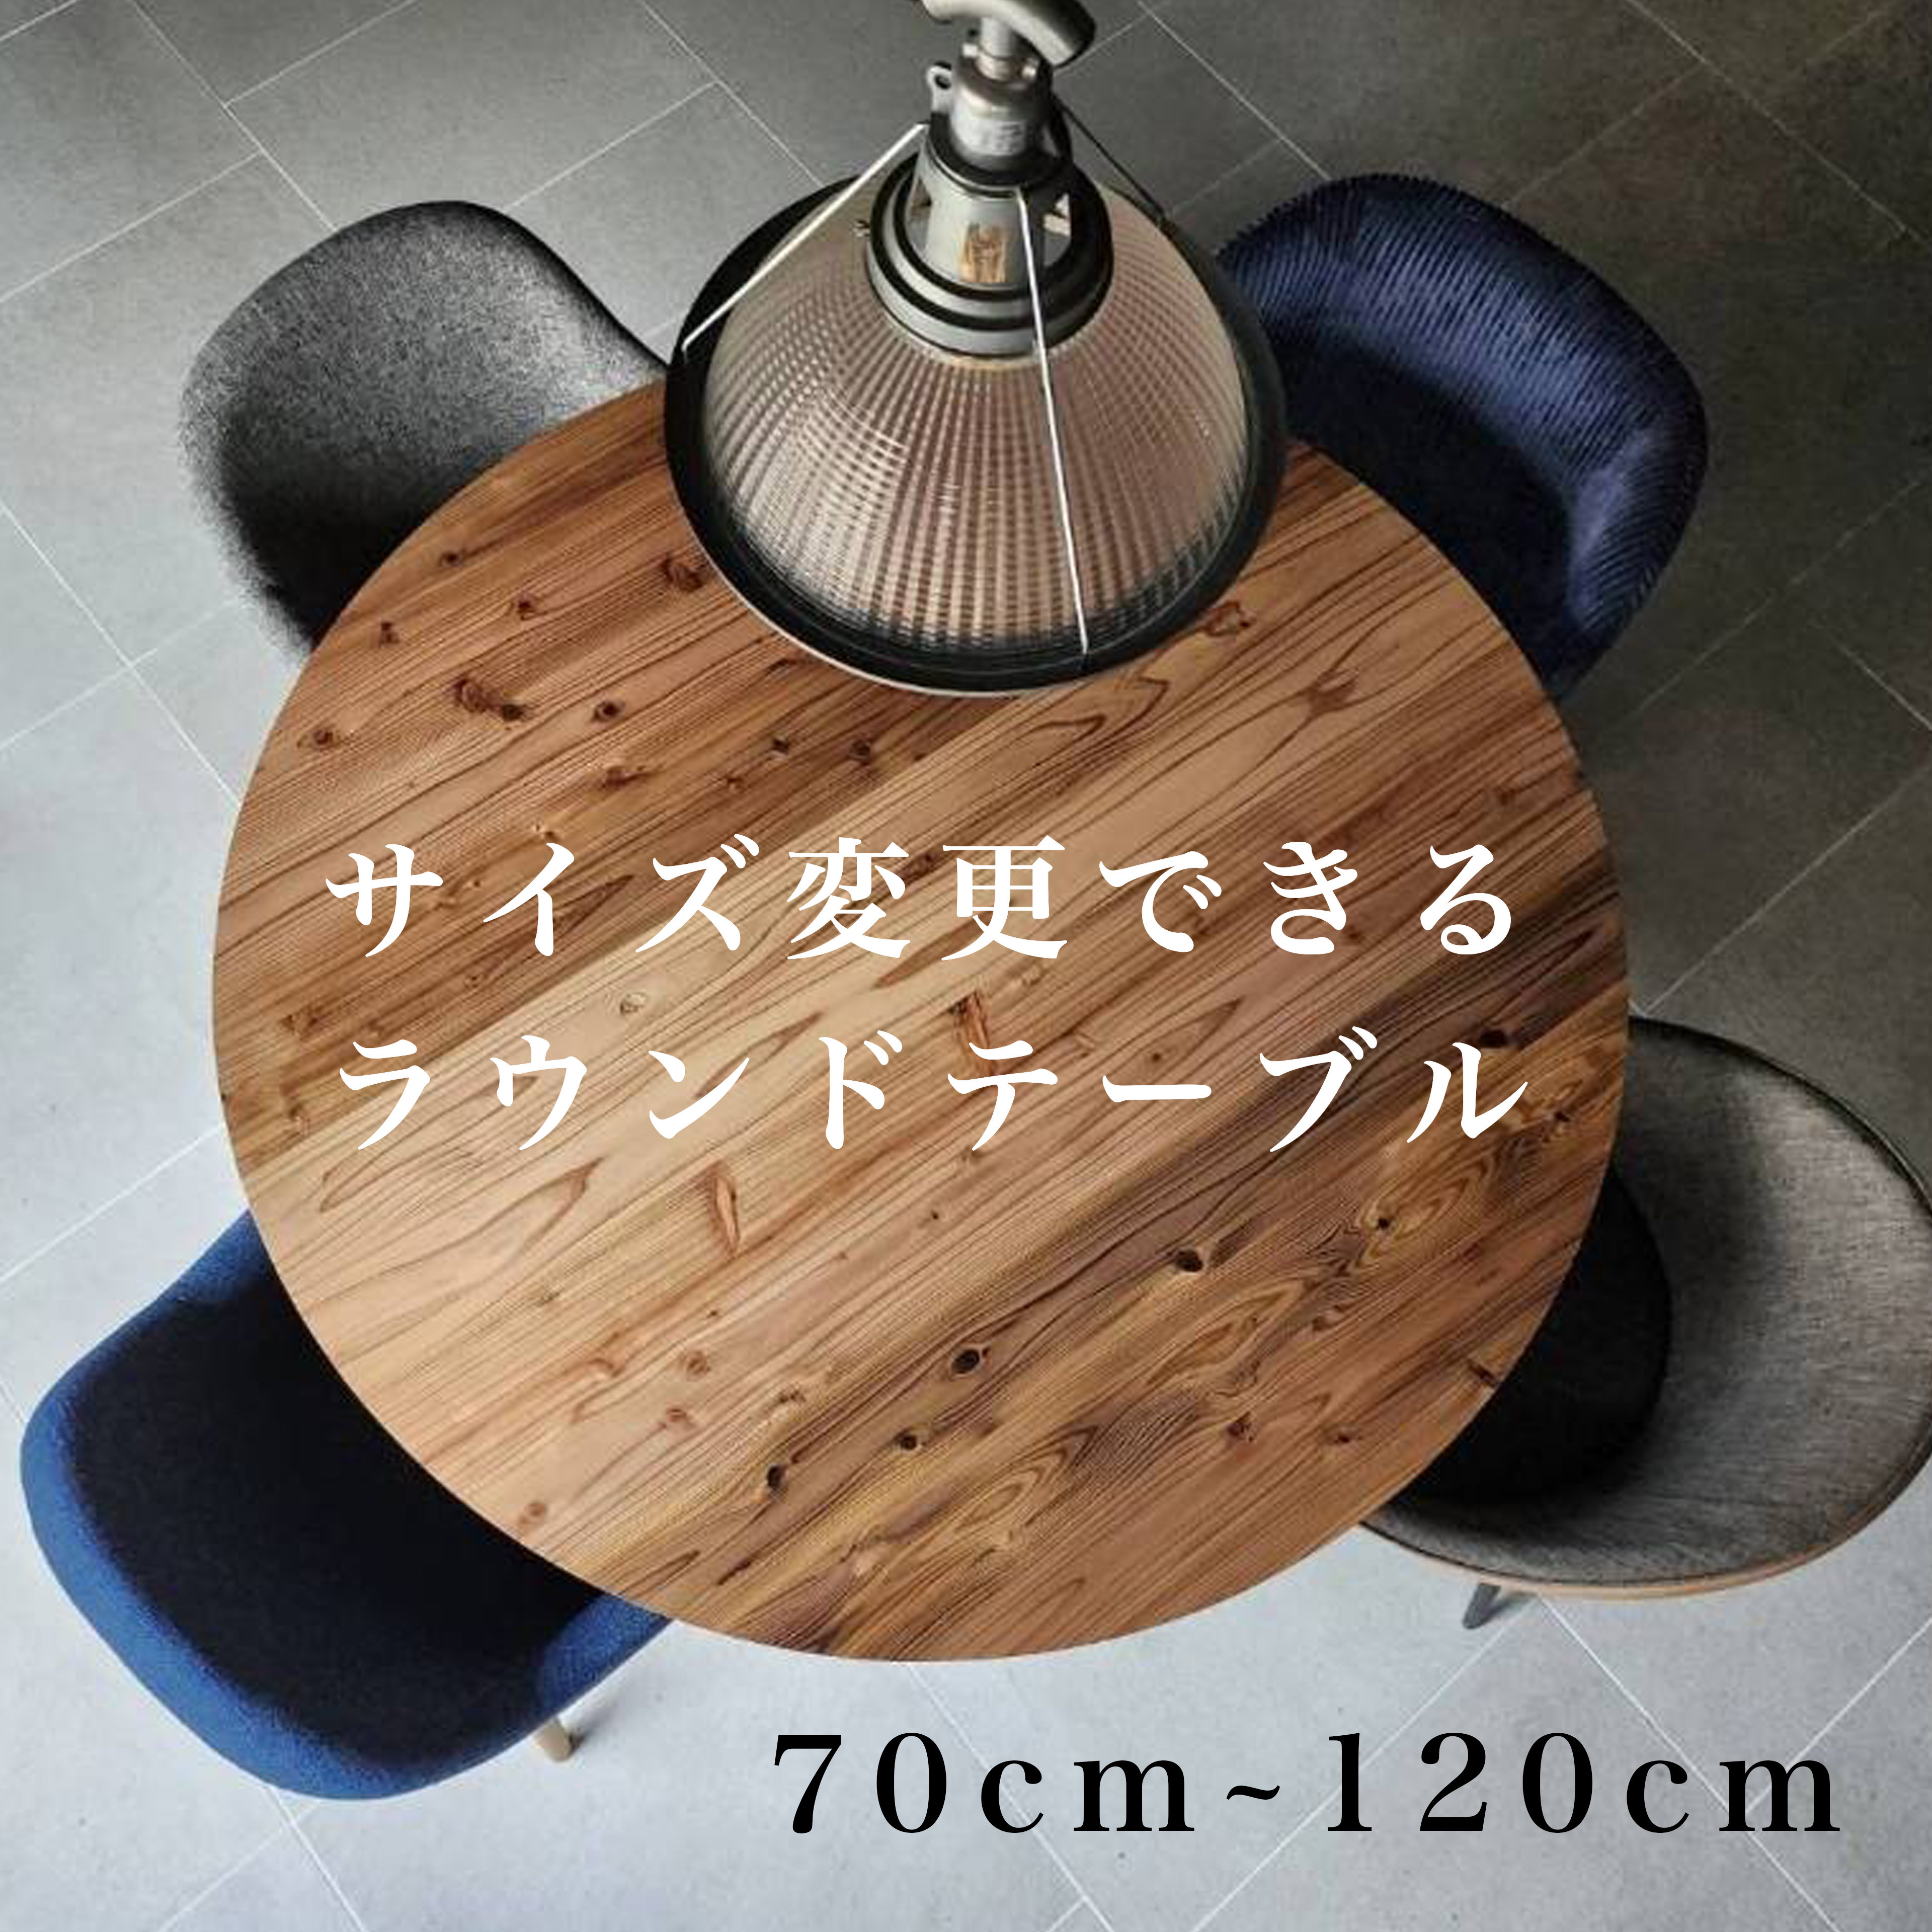 【サイズ変更無料】ダイニングテーブル 丸型テーブル ラウンド